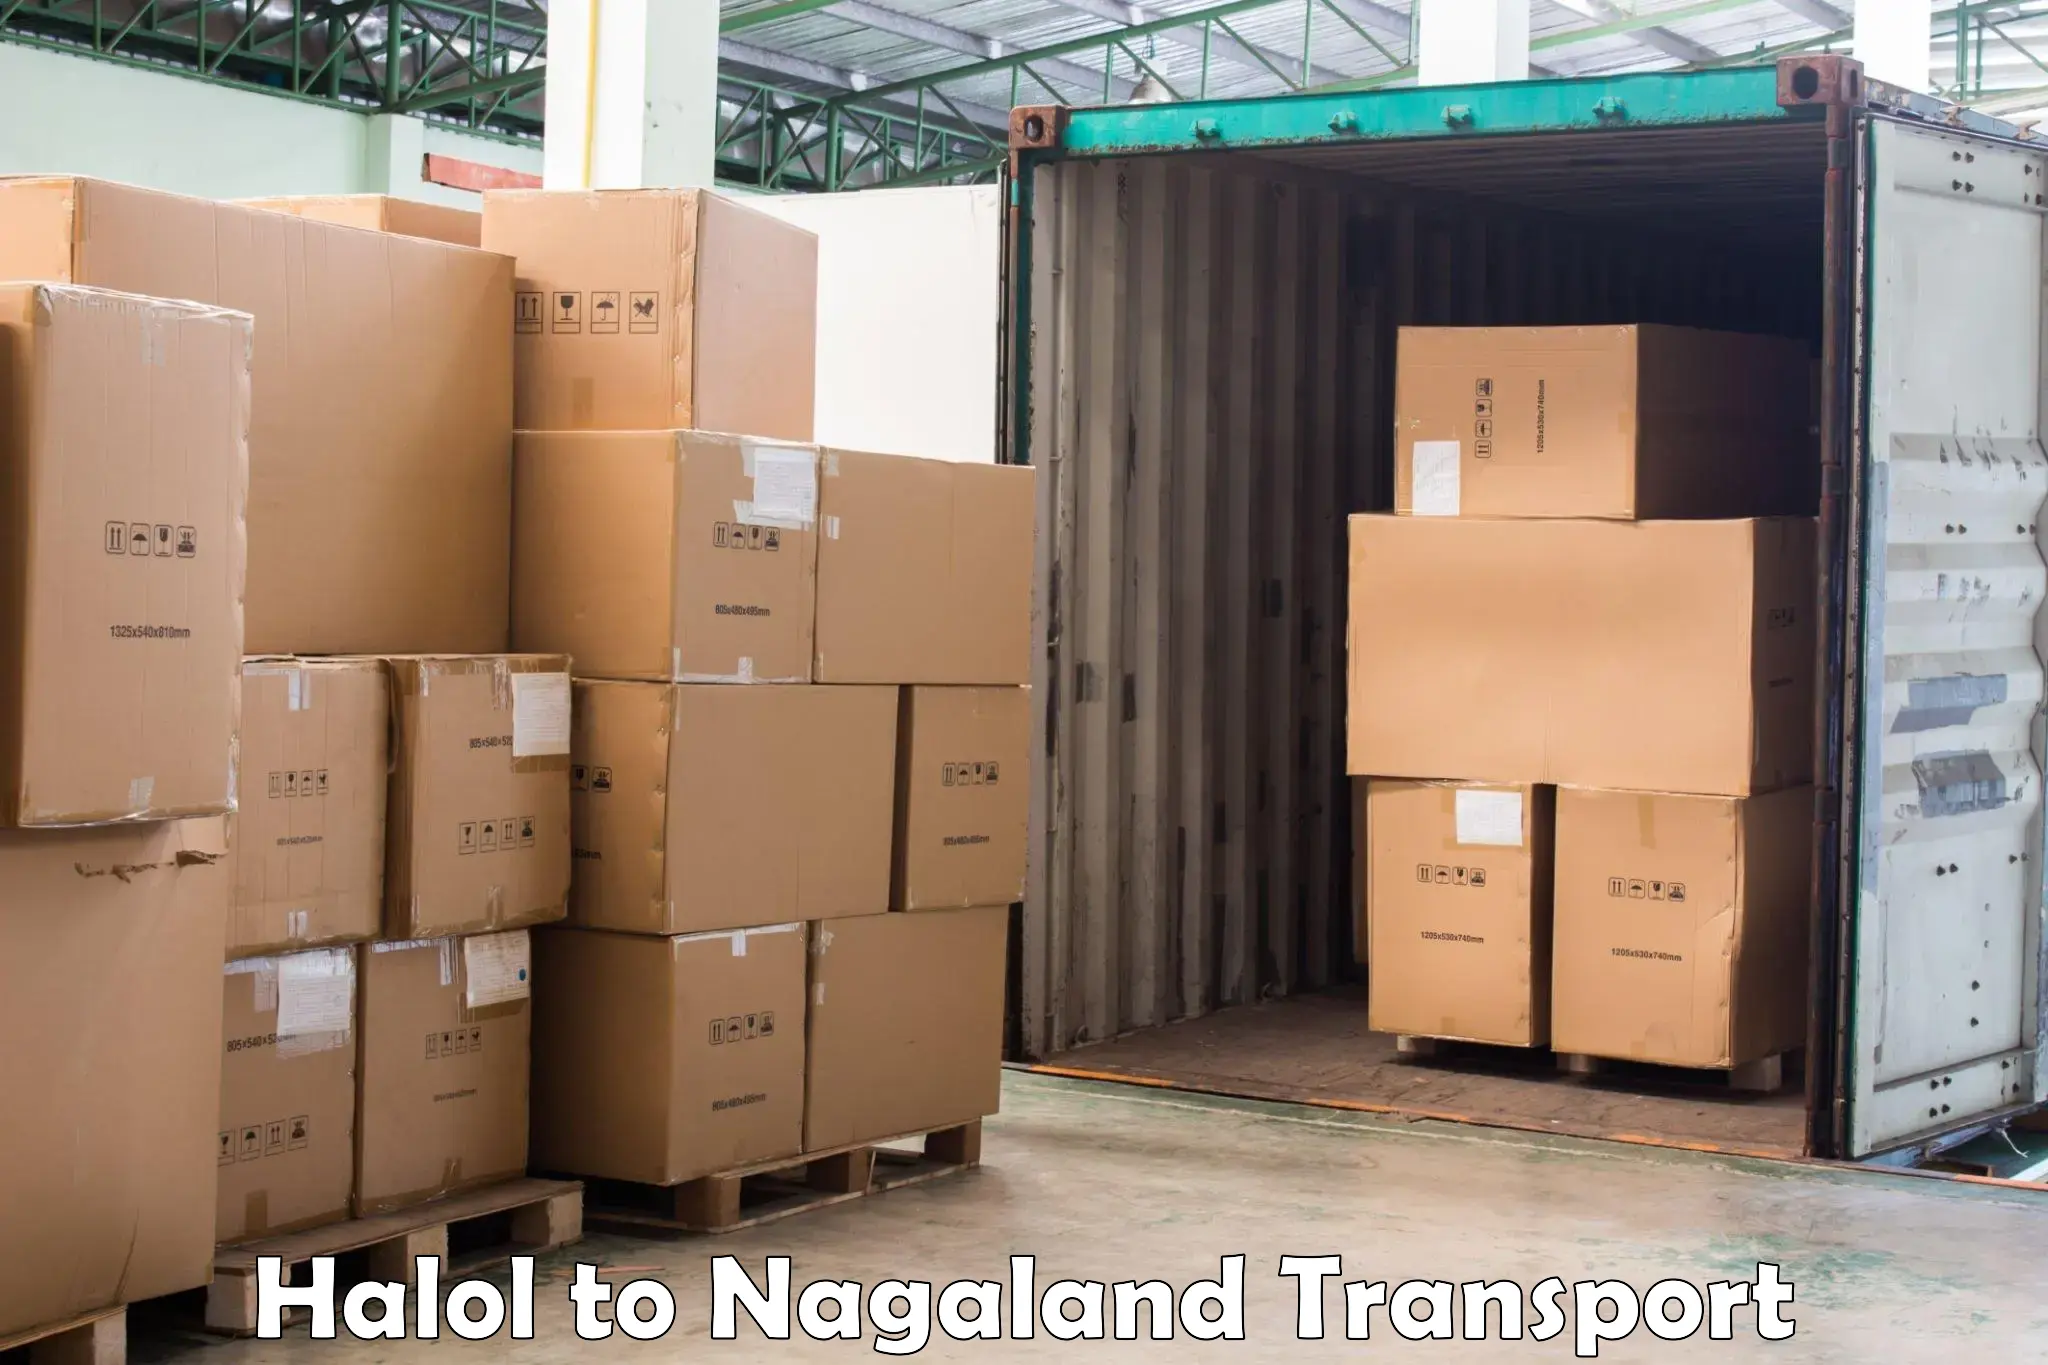 Online transport service Halol to NIT Nagaland